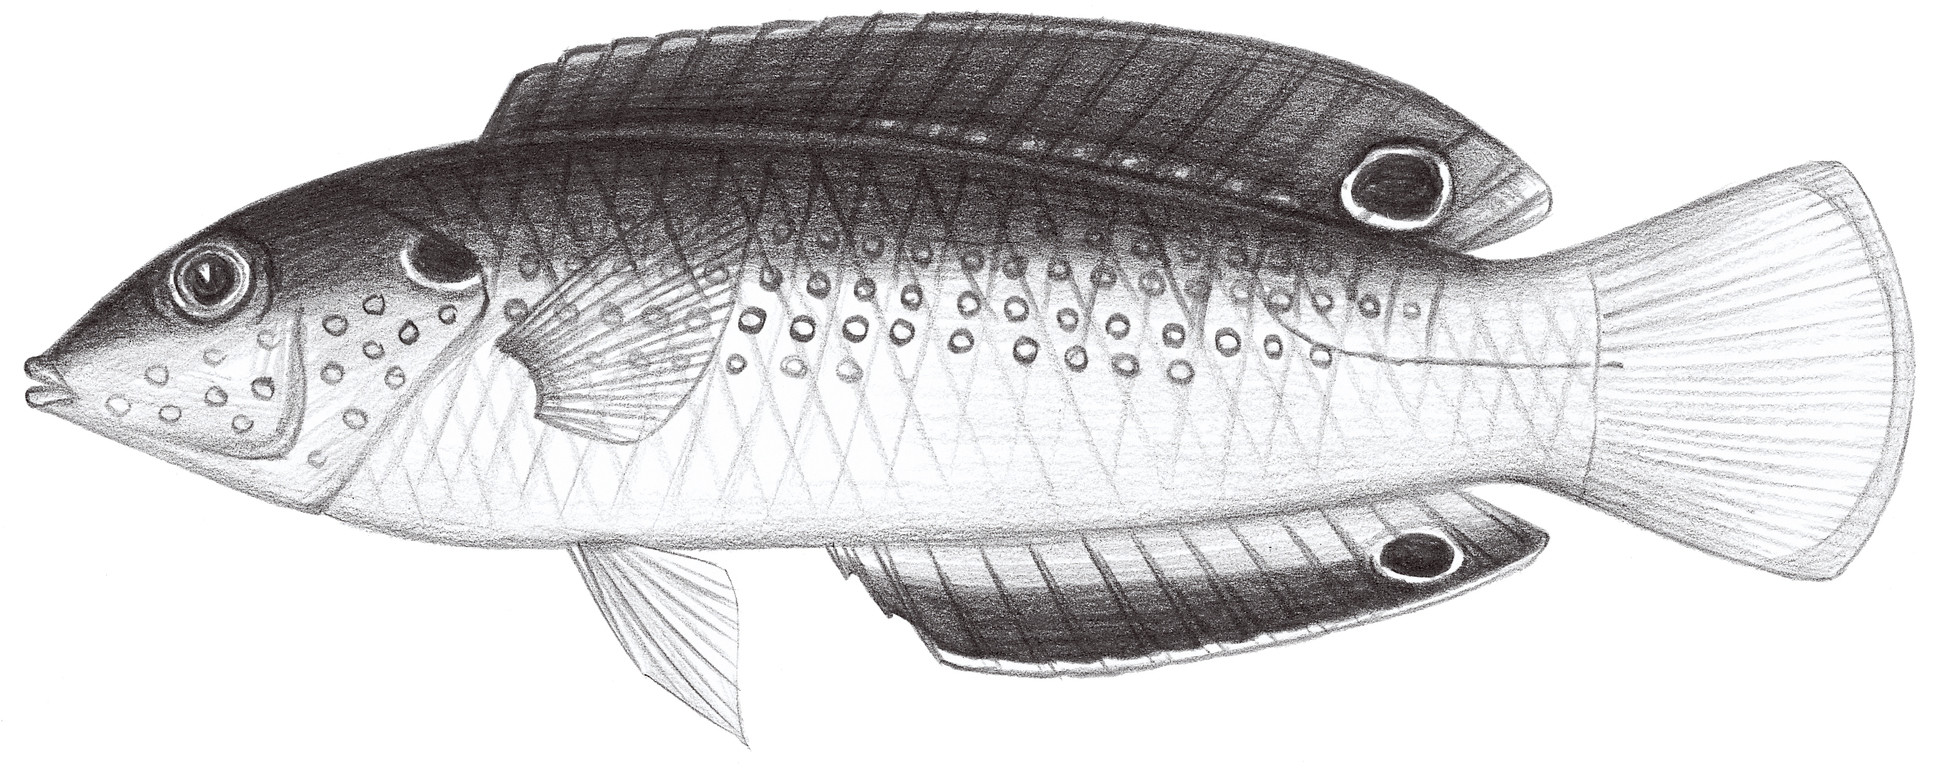 1724.	新幾內亞阿南魚 Anampses neoguinaicus Bleeker, 1878